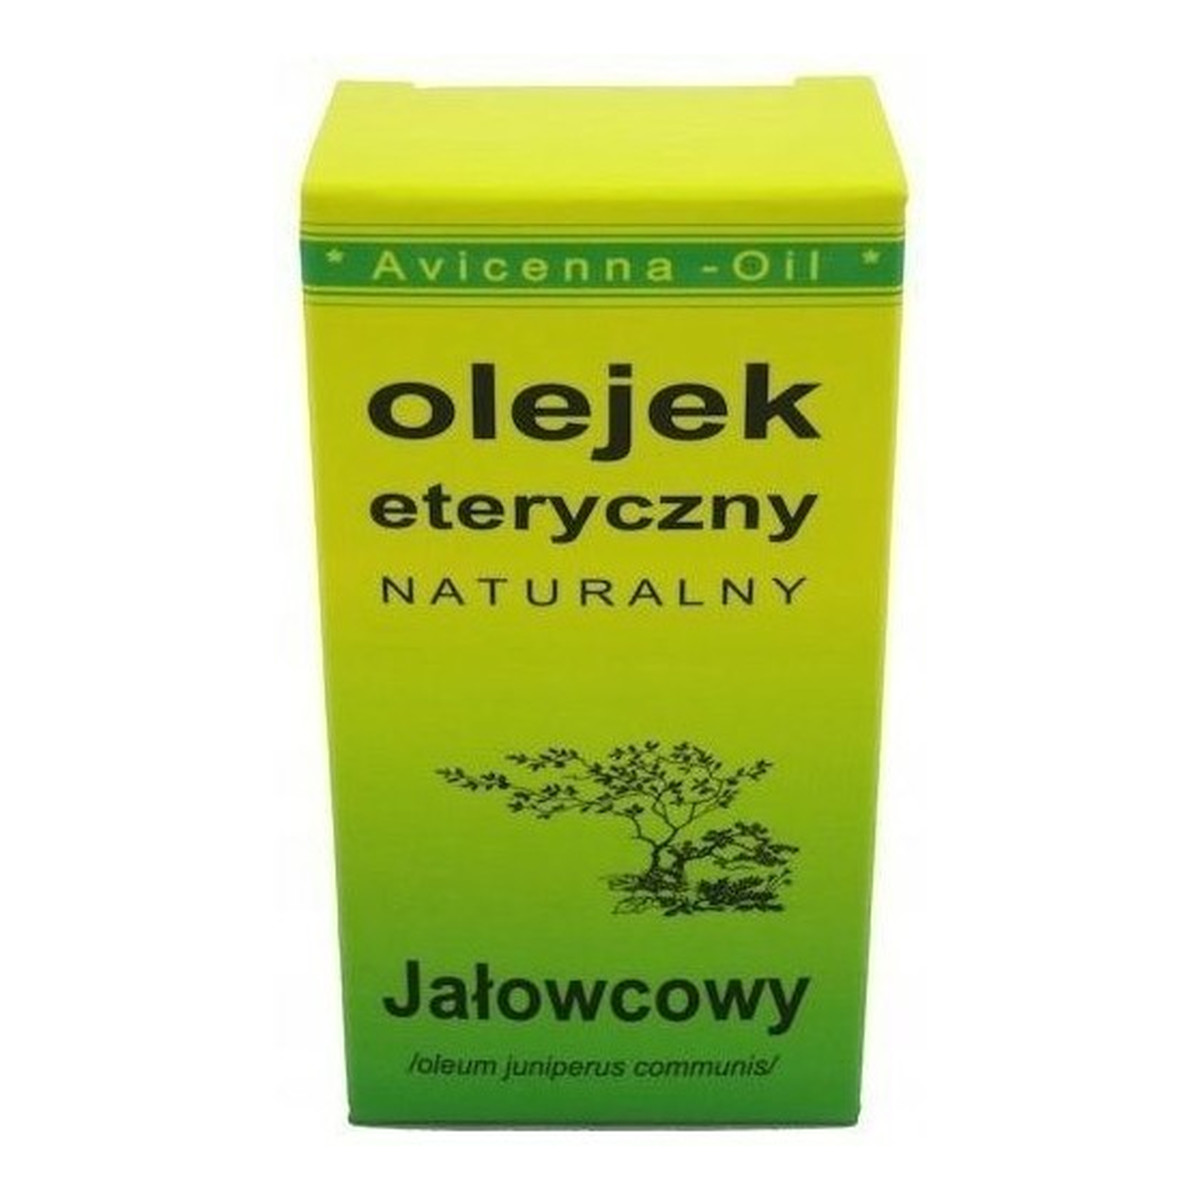 Avicenna-Oil Naturalny Olejek Eteryczny Jałowcowy 7ml